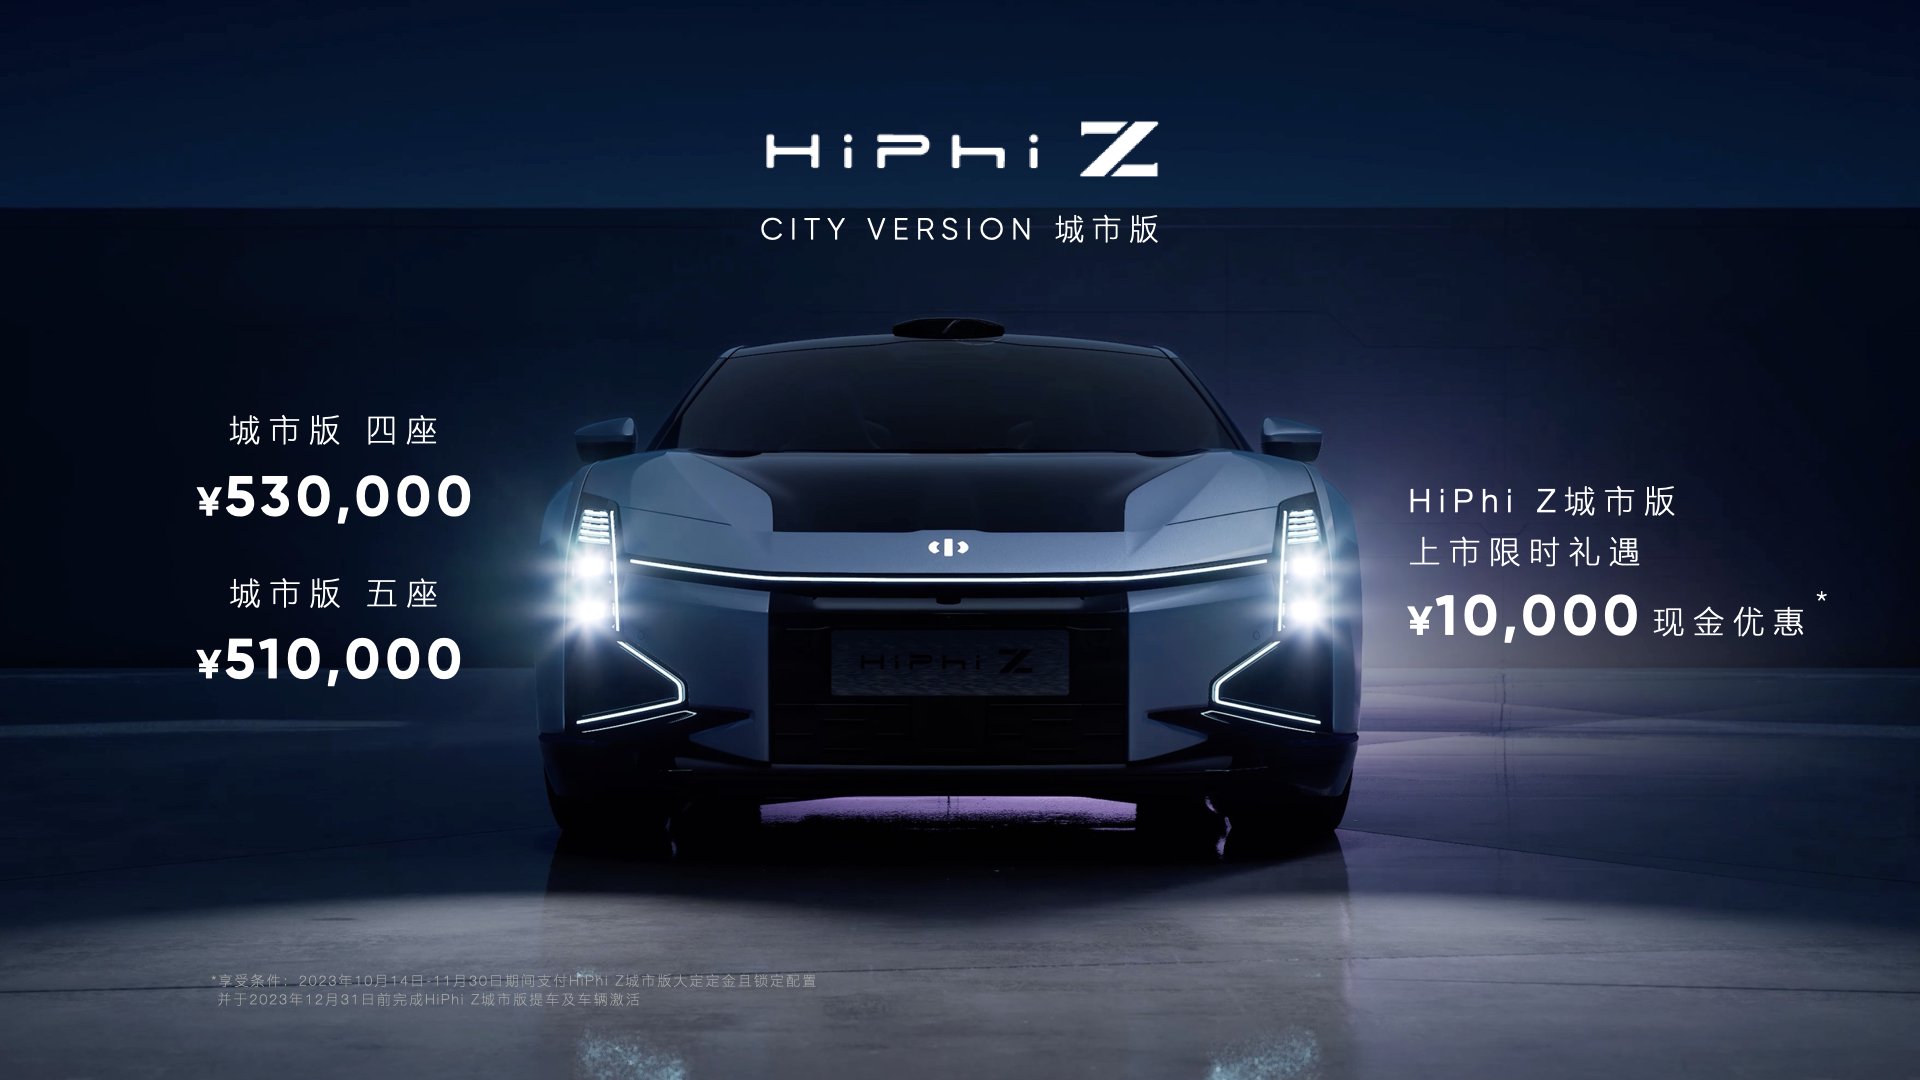 高合HiPhi Z城市版上市 售价51-53万元